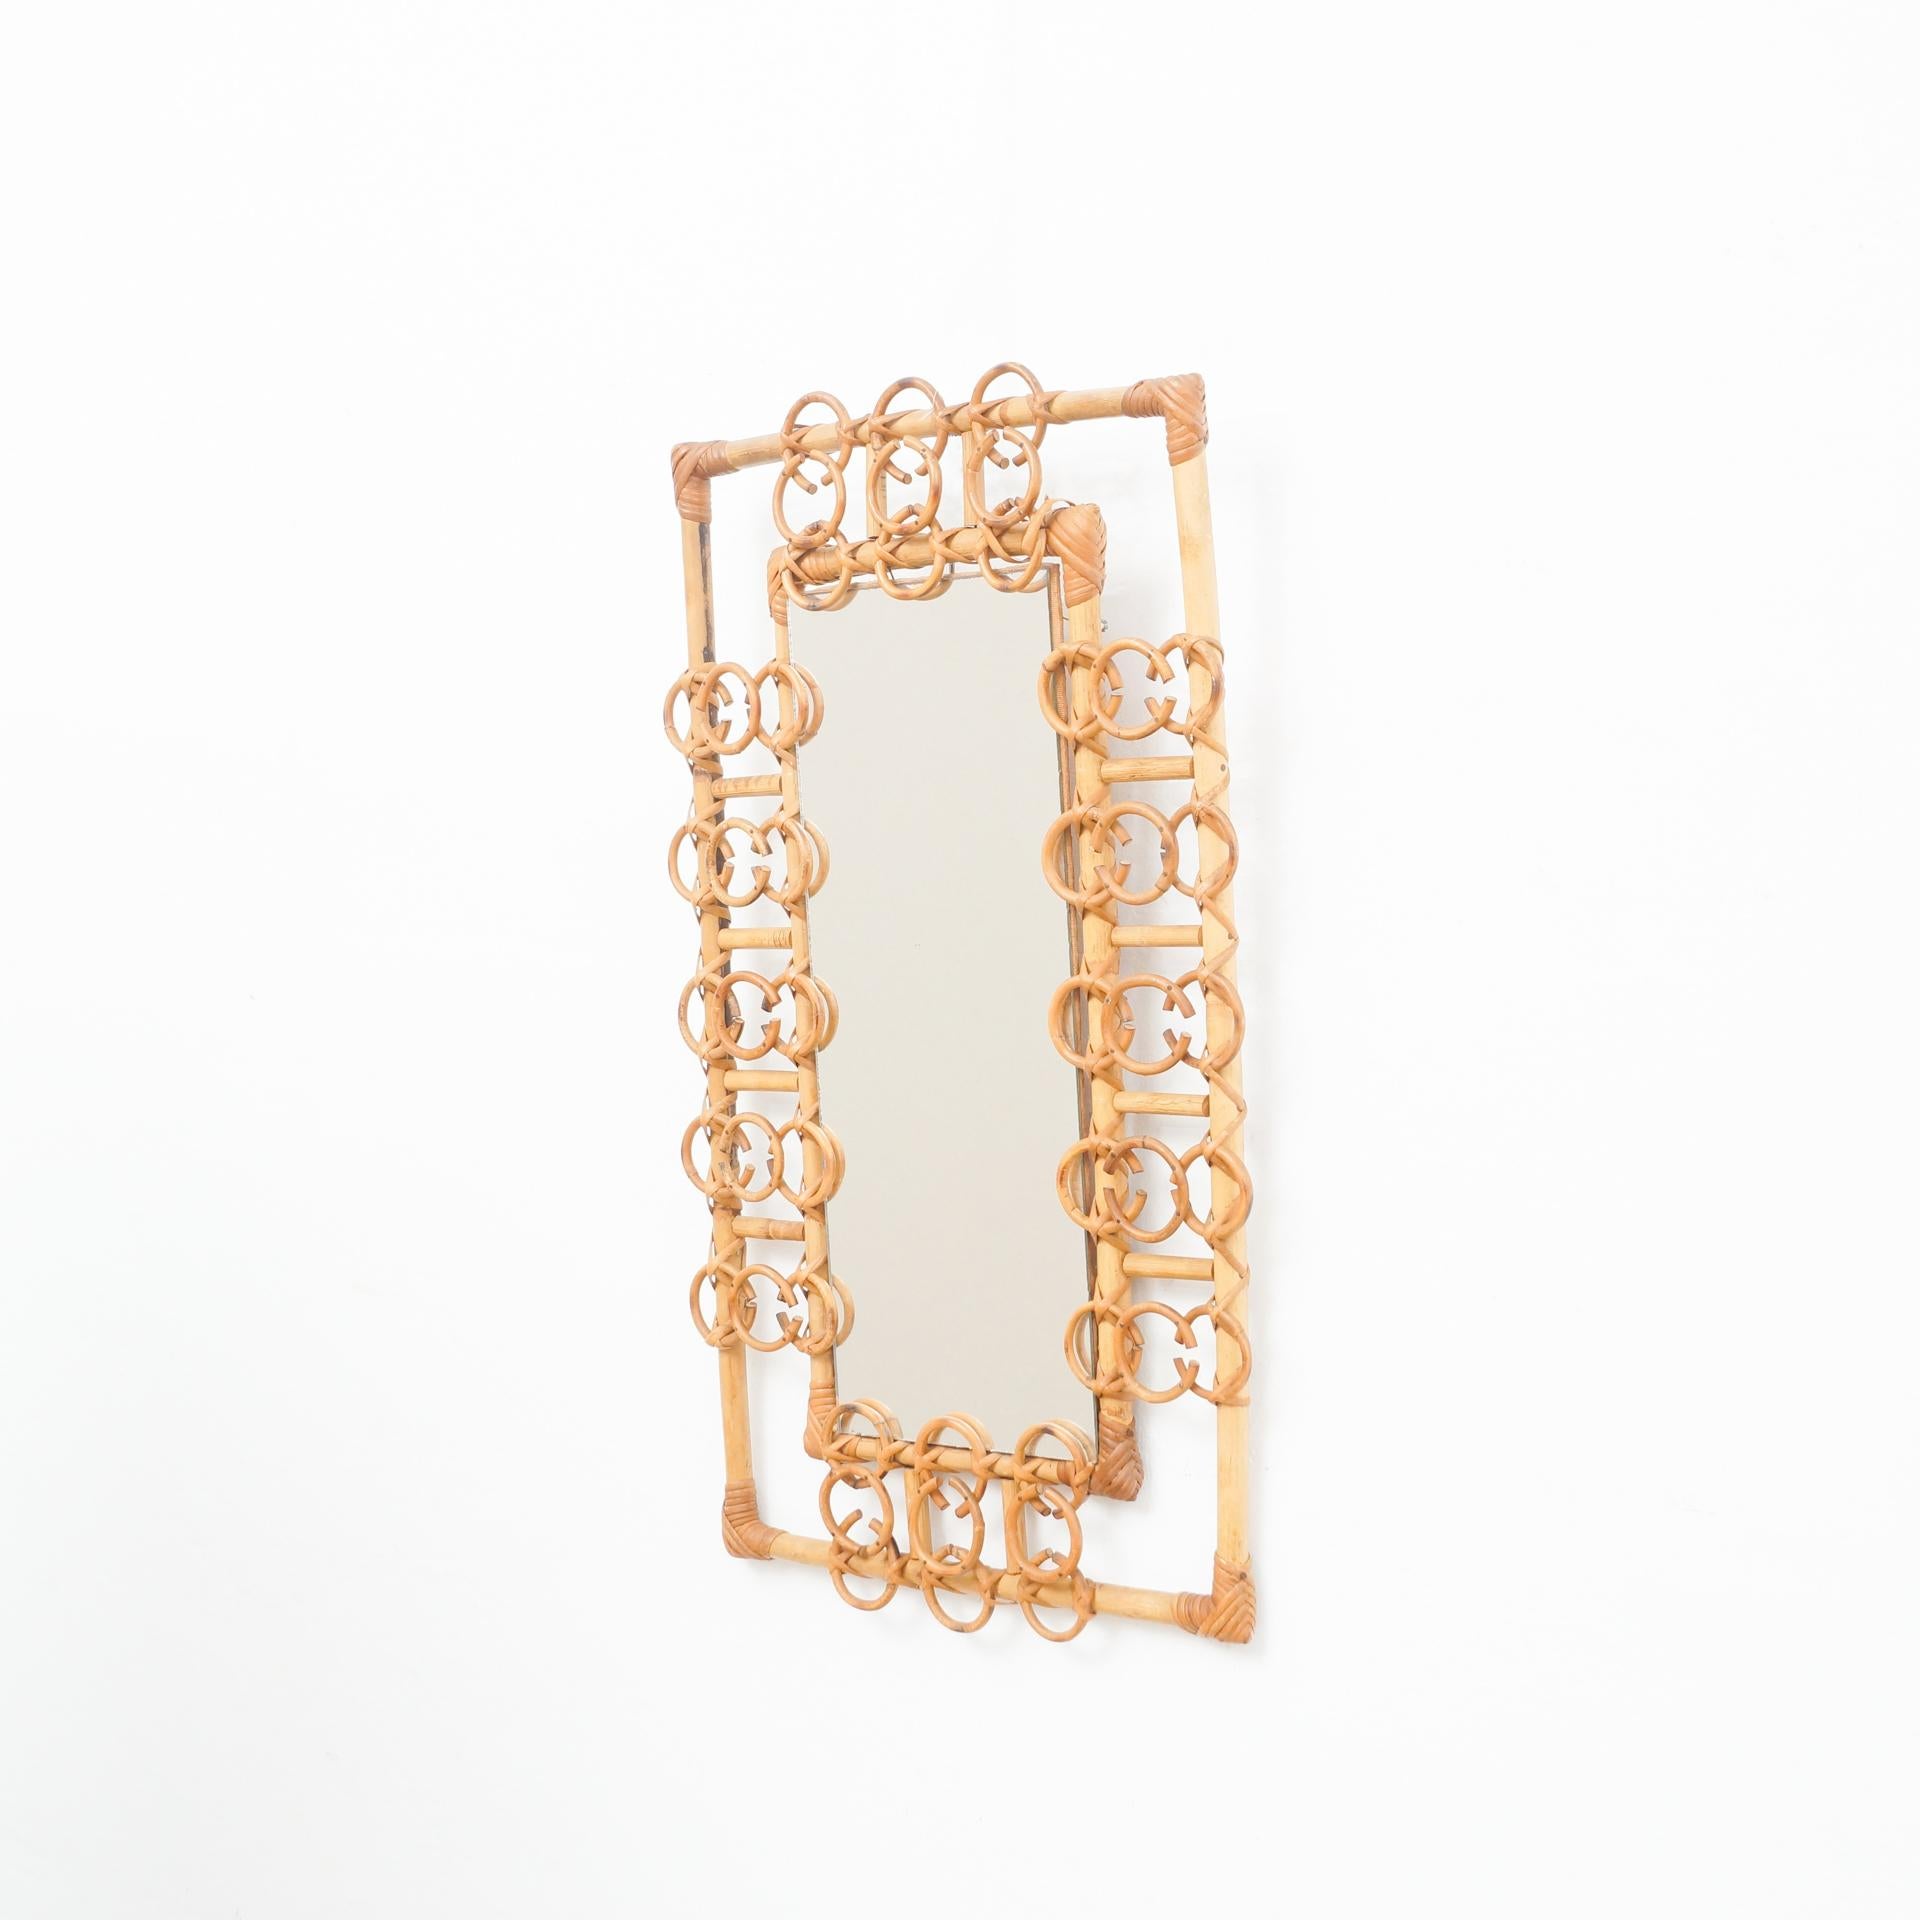 Mid-Century Modern Spiegel aus Bambus und Rattan handgefertigt, um 1960
Traditionell in Frankreich hergestellt.
Von einem unbekannten Designer.

Originaler Zustand mit geringen alters- und gebrauchsbedingten Abnutzungserscheinungen, der eine